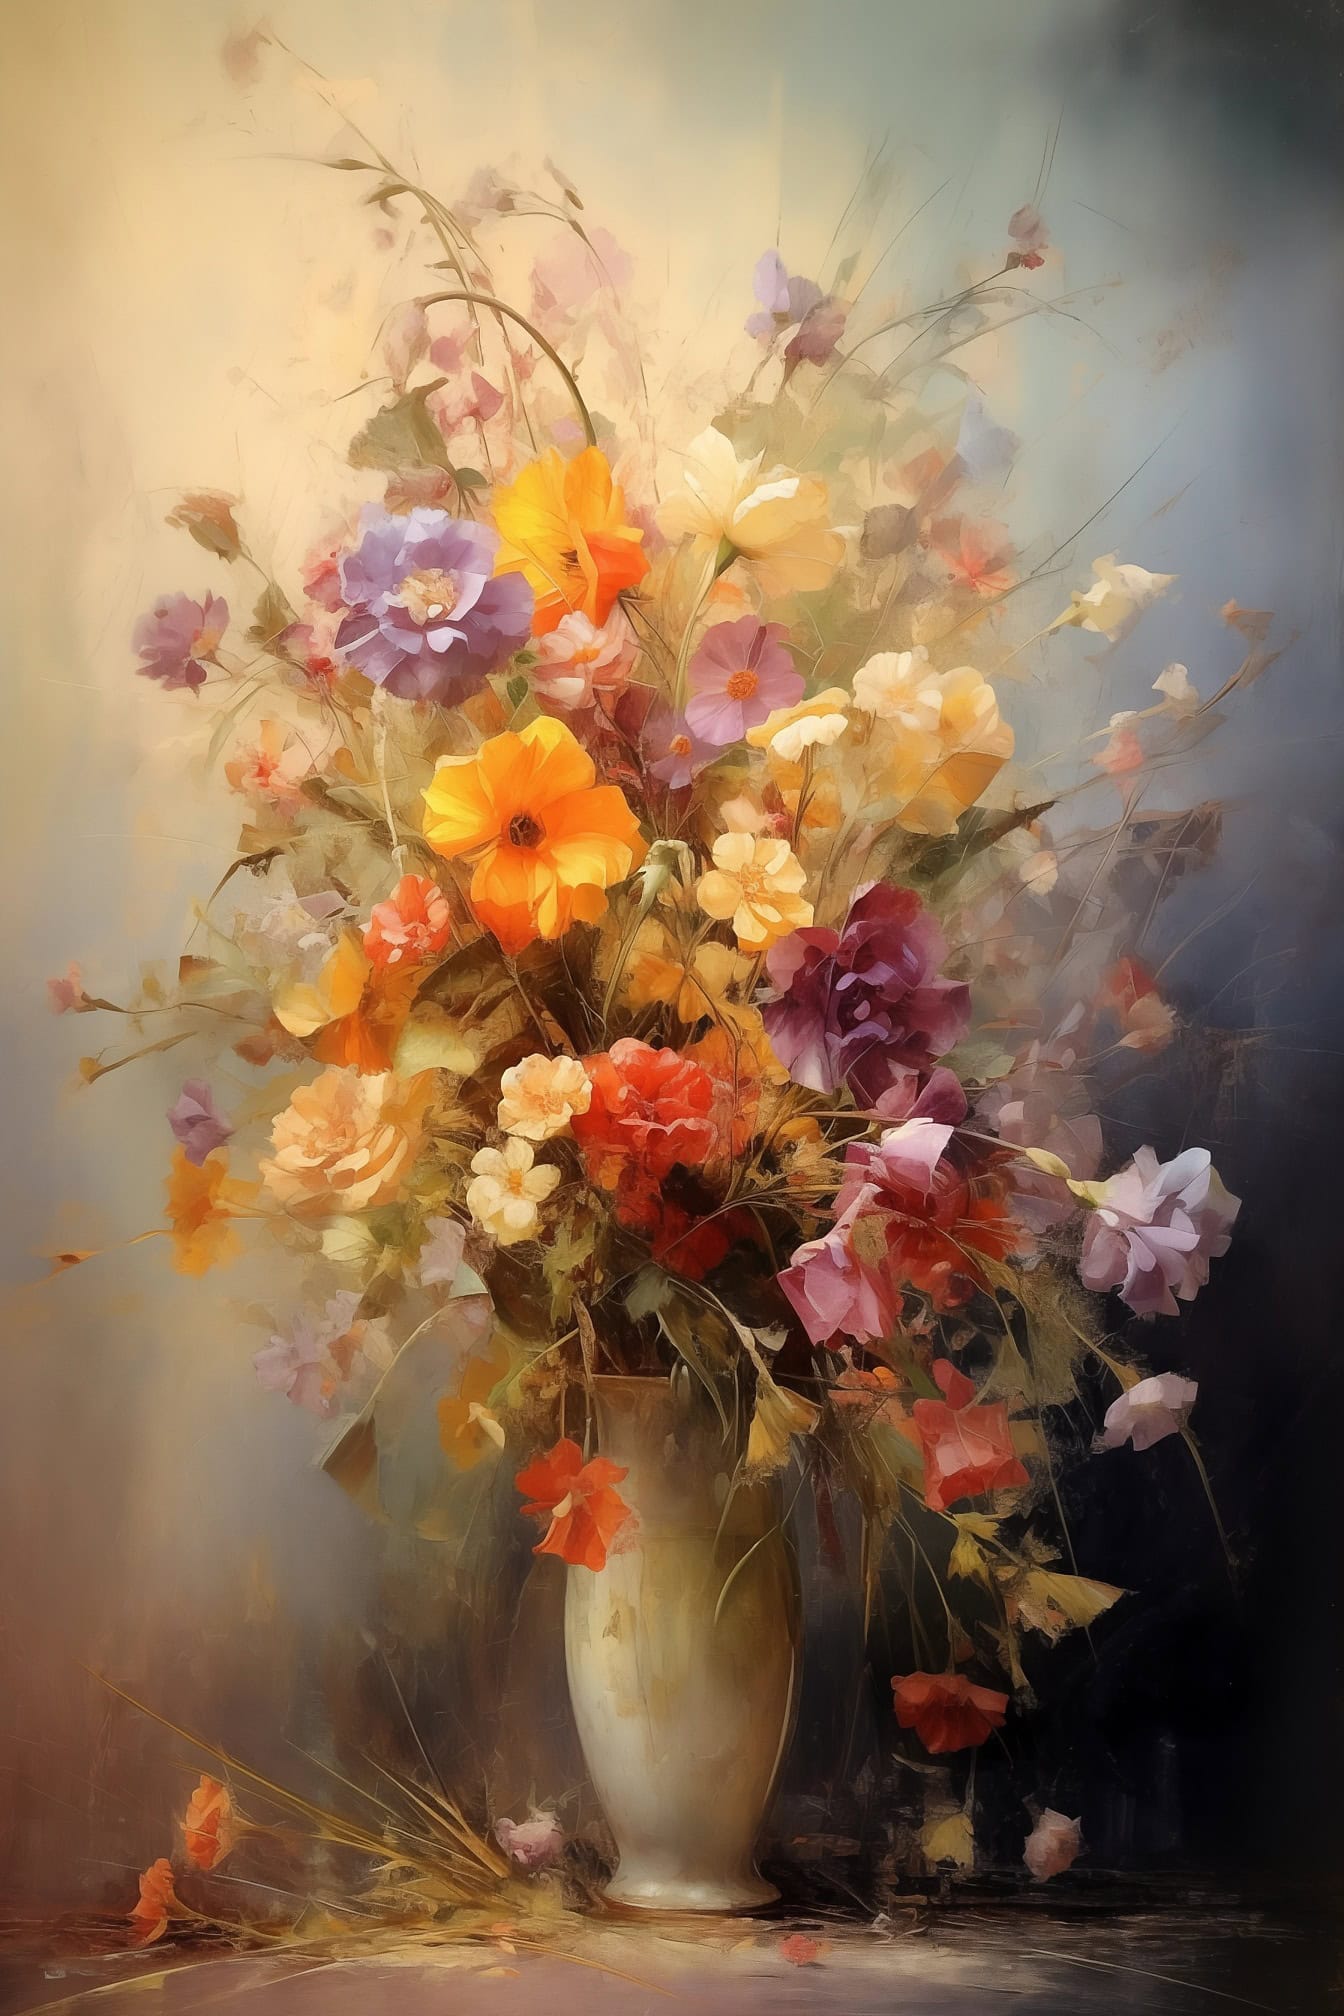 Stillleben Ölgemälde von bunten Blumen in einer Vase